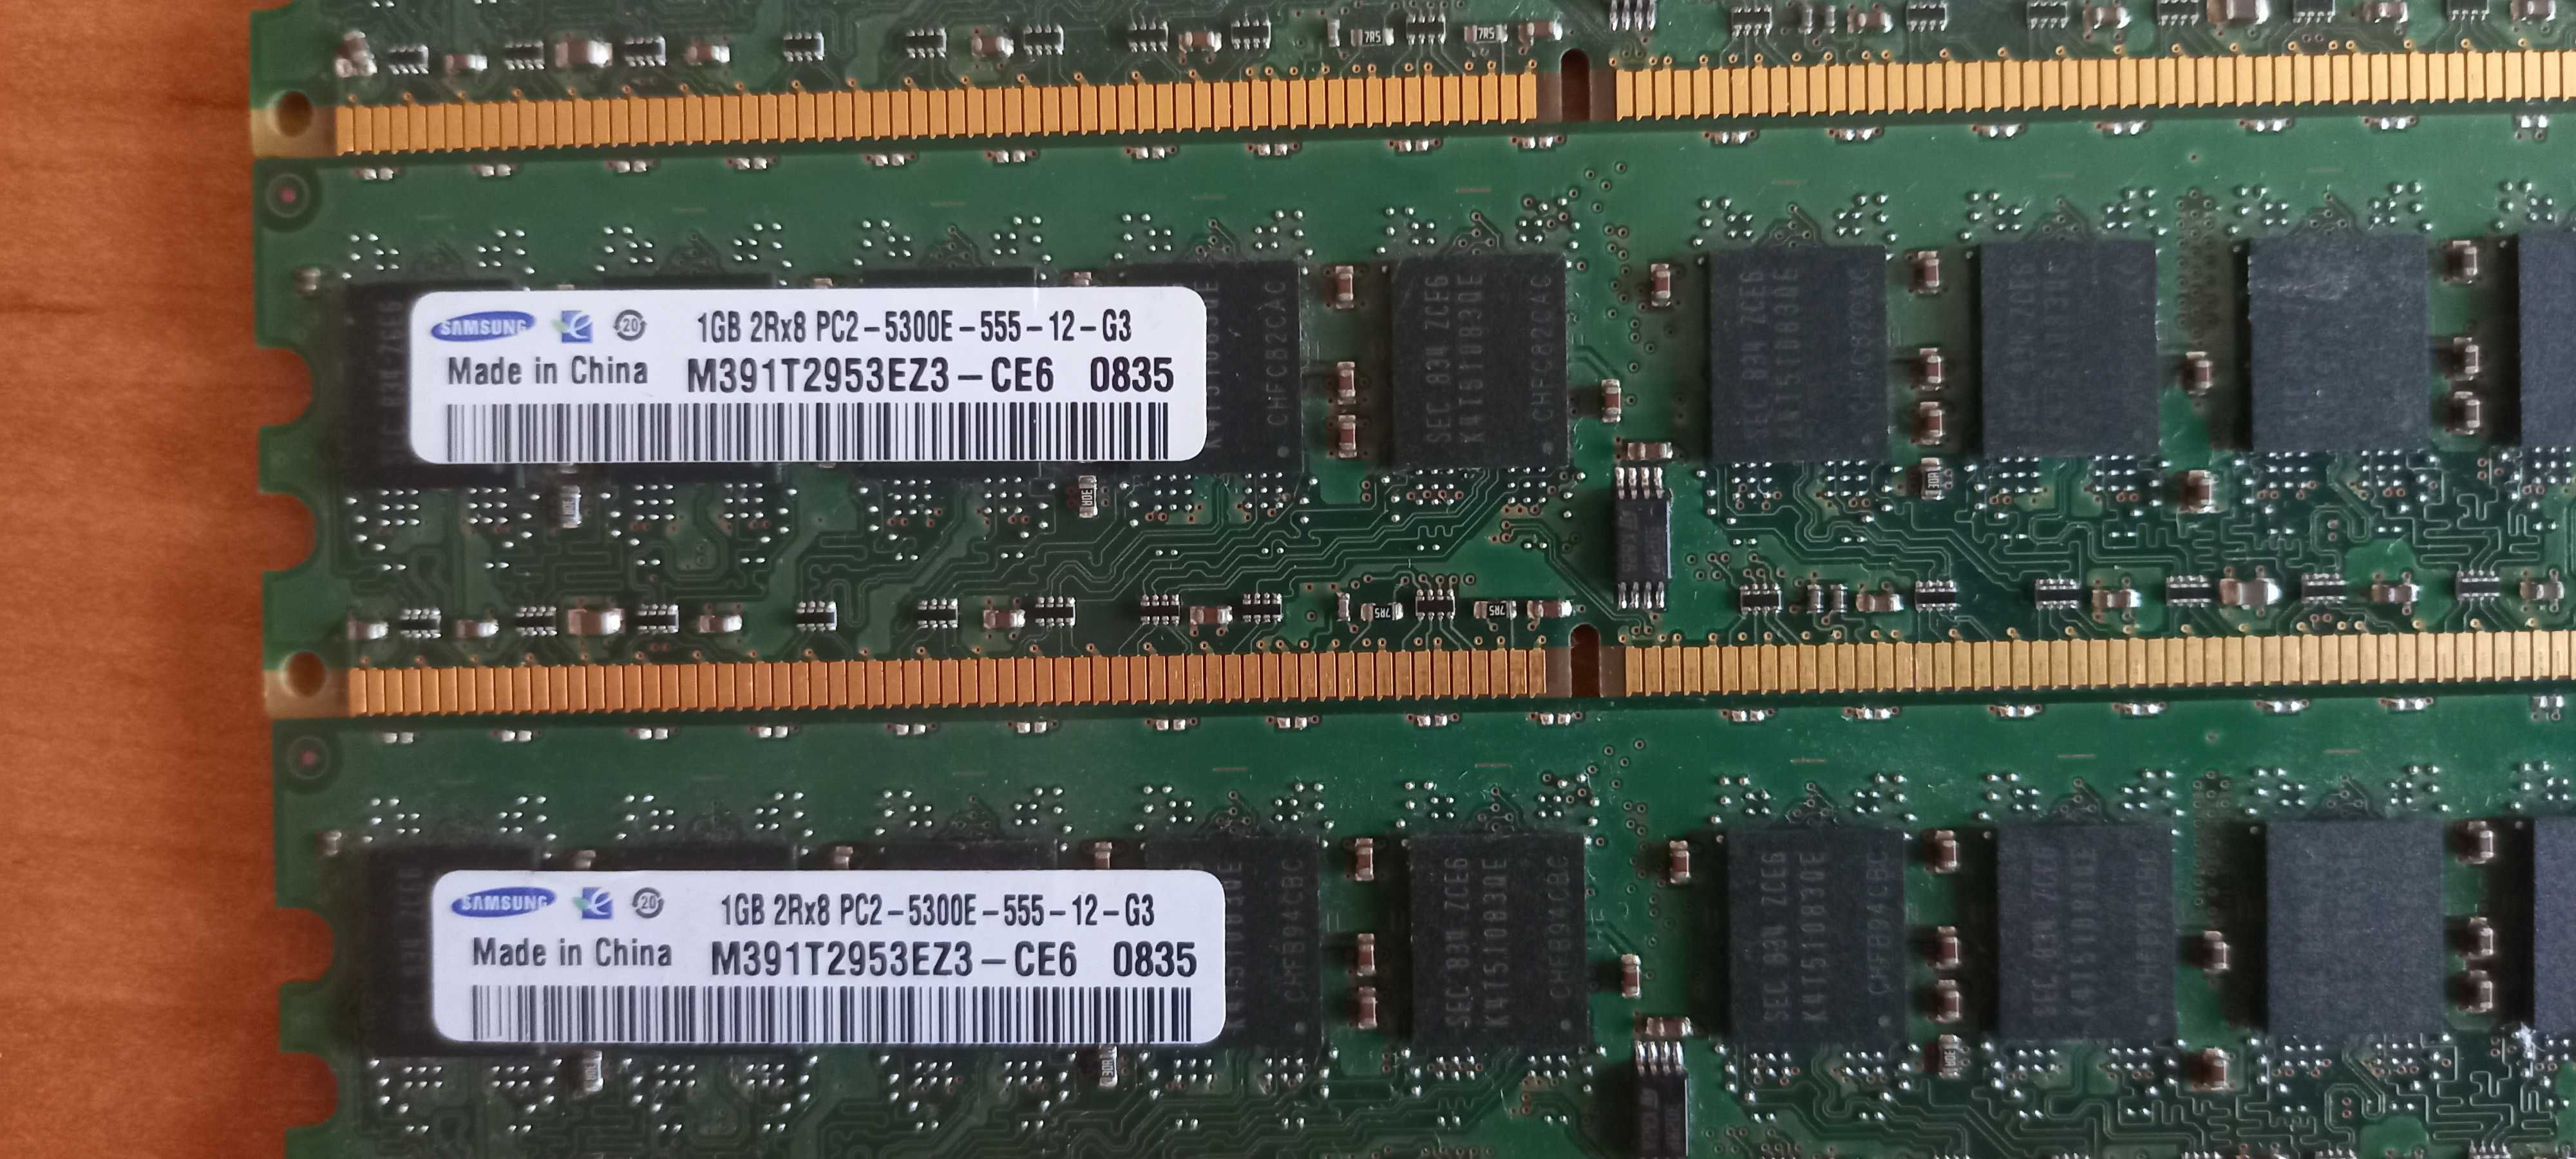 Pamięć Ram 1Gb x 4 sztuki 2Rx8 PC2 5300E DDR2